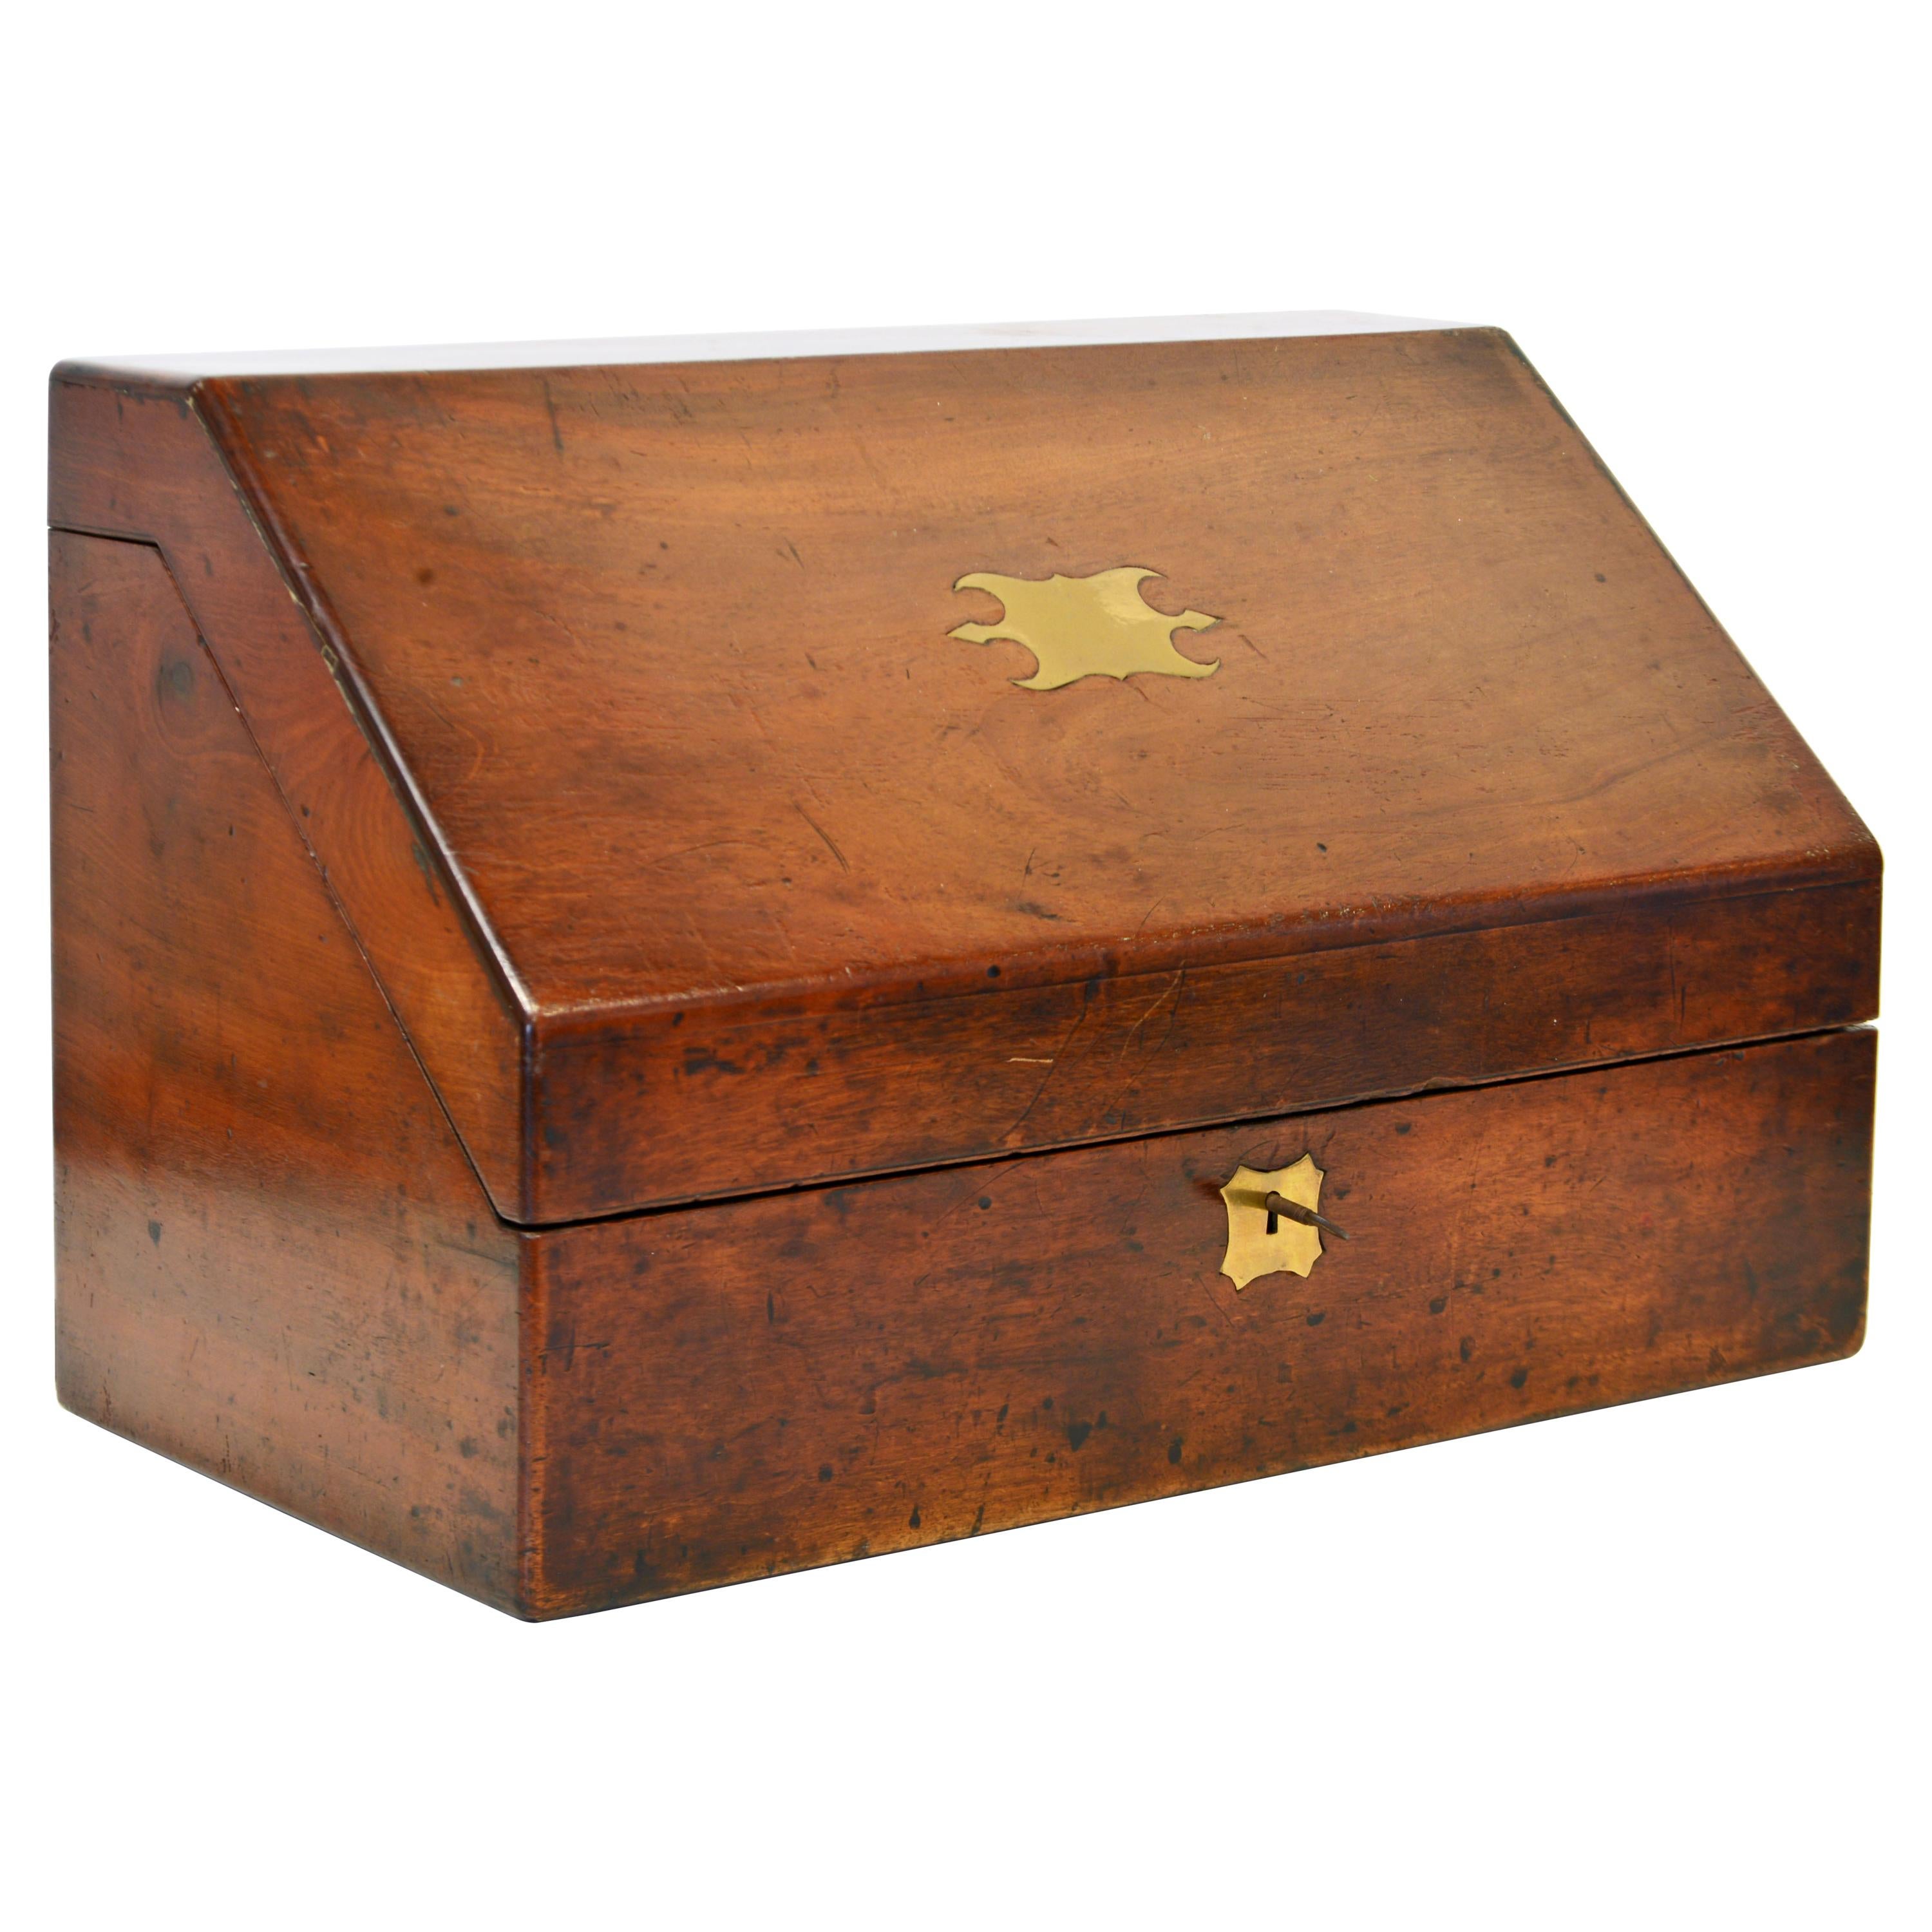 English Mahogany Slant Top Campaign Letter Box with Complete Interior Circa 1850